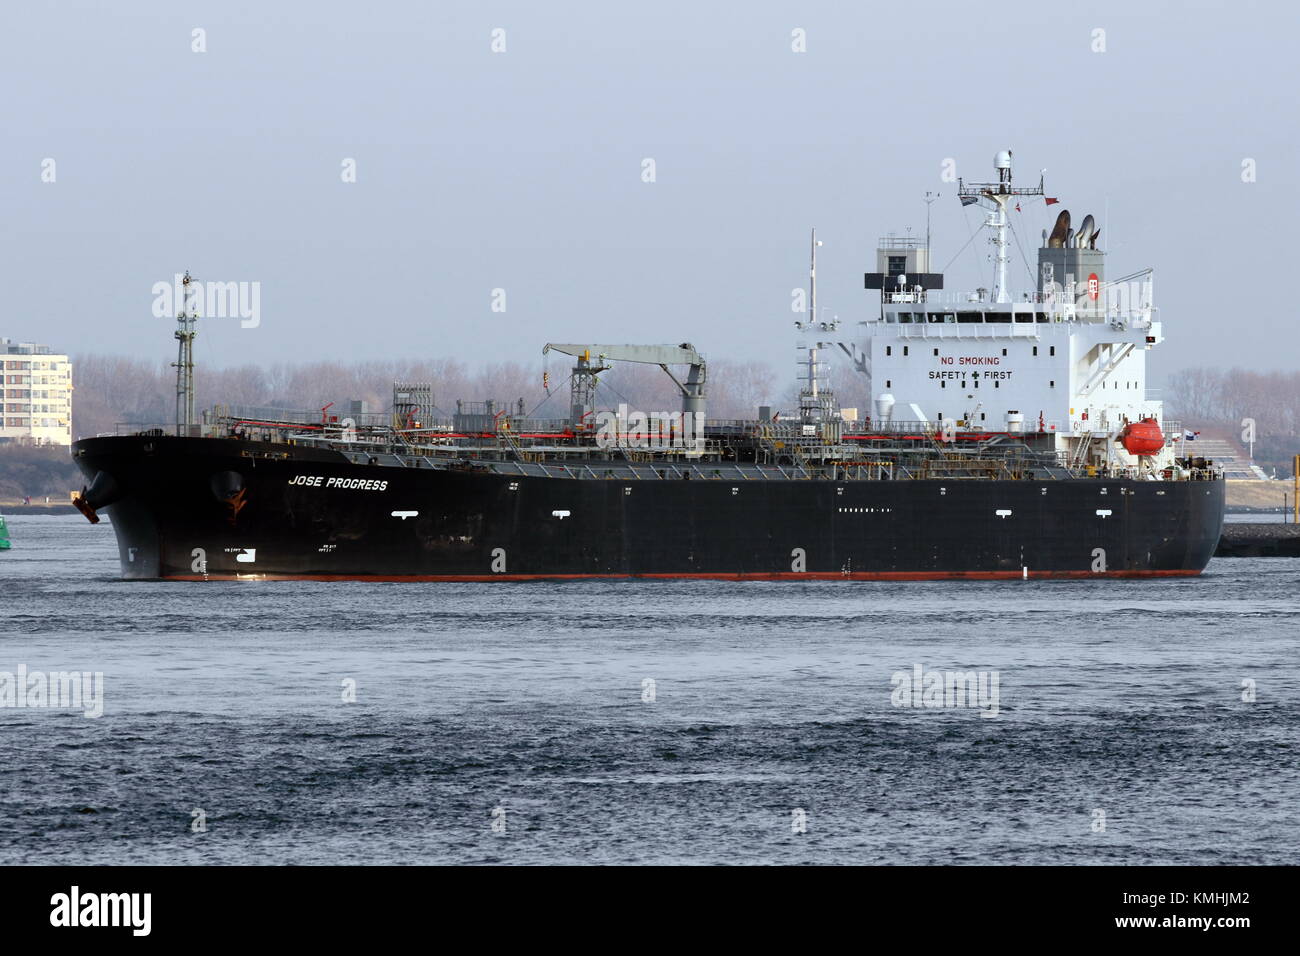 El petrolero José progreso deja el puerto de Rotterdam. Foto de stock